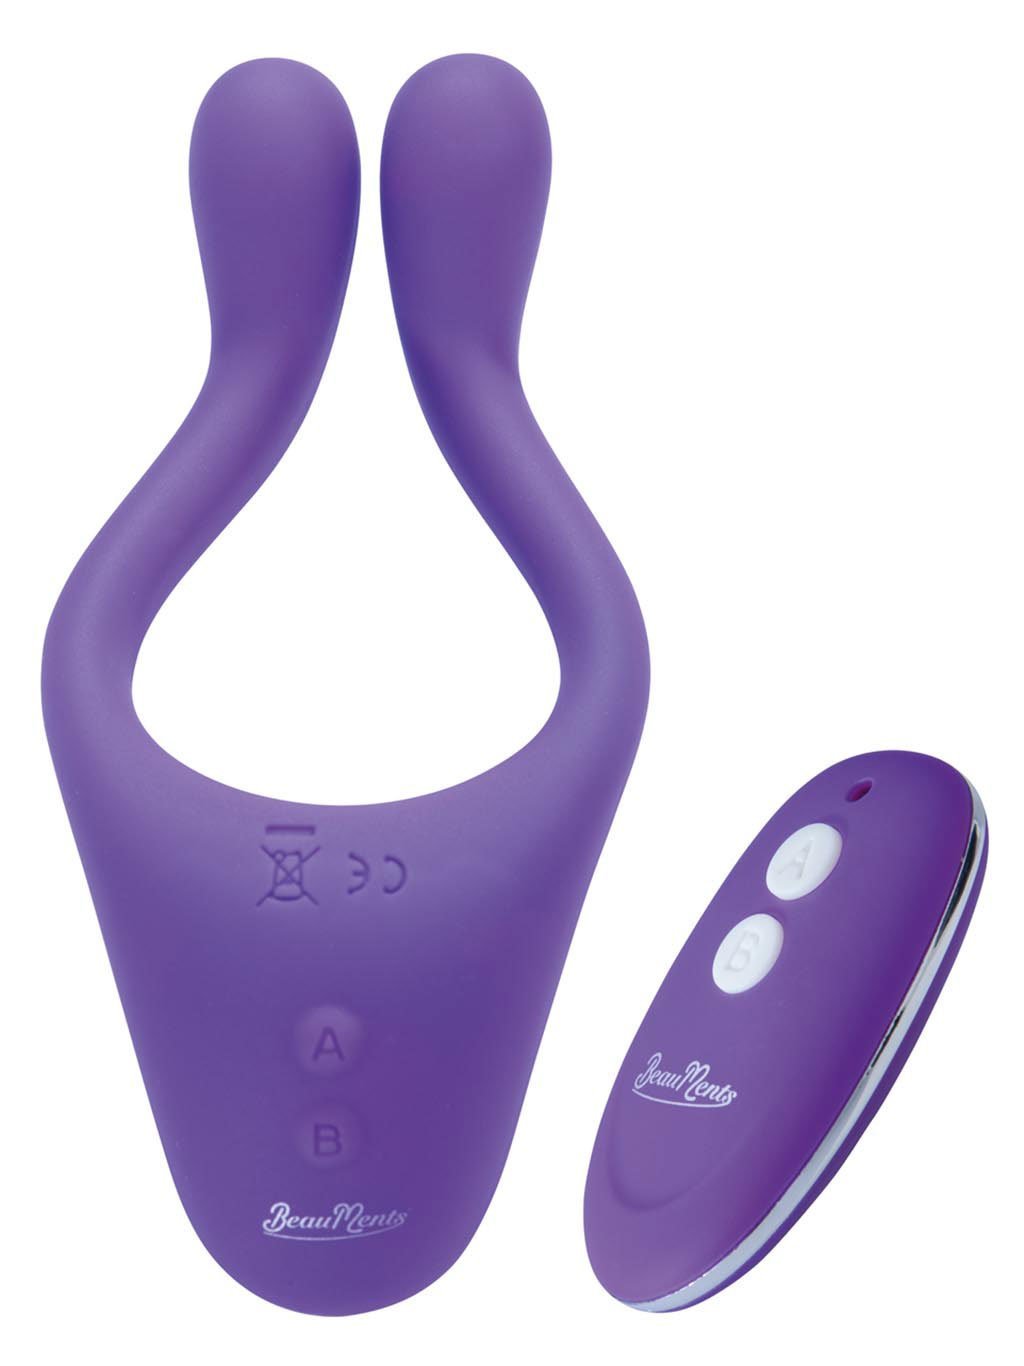 Beauments Doppio 2.0 with remote – Purple